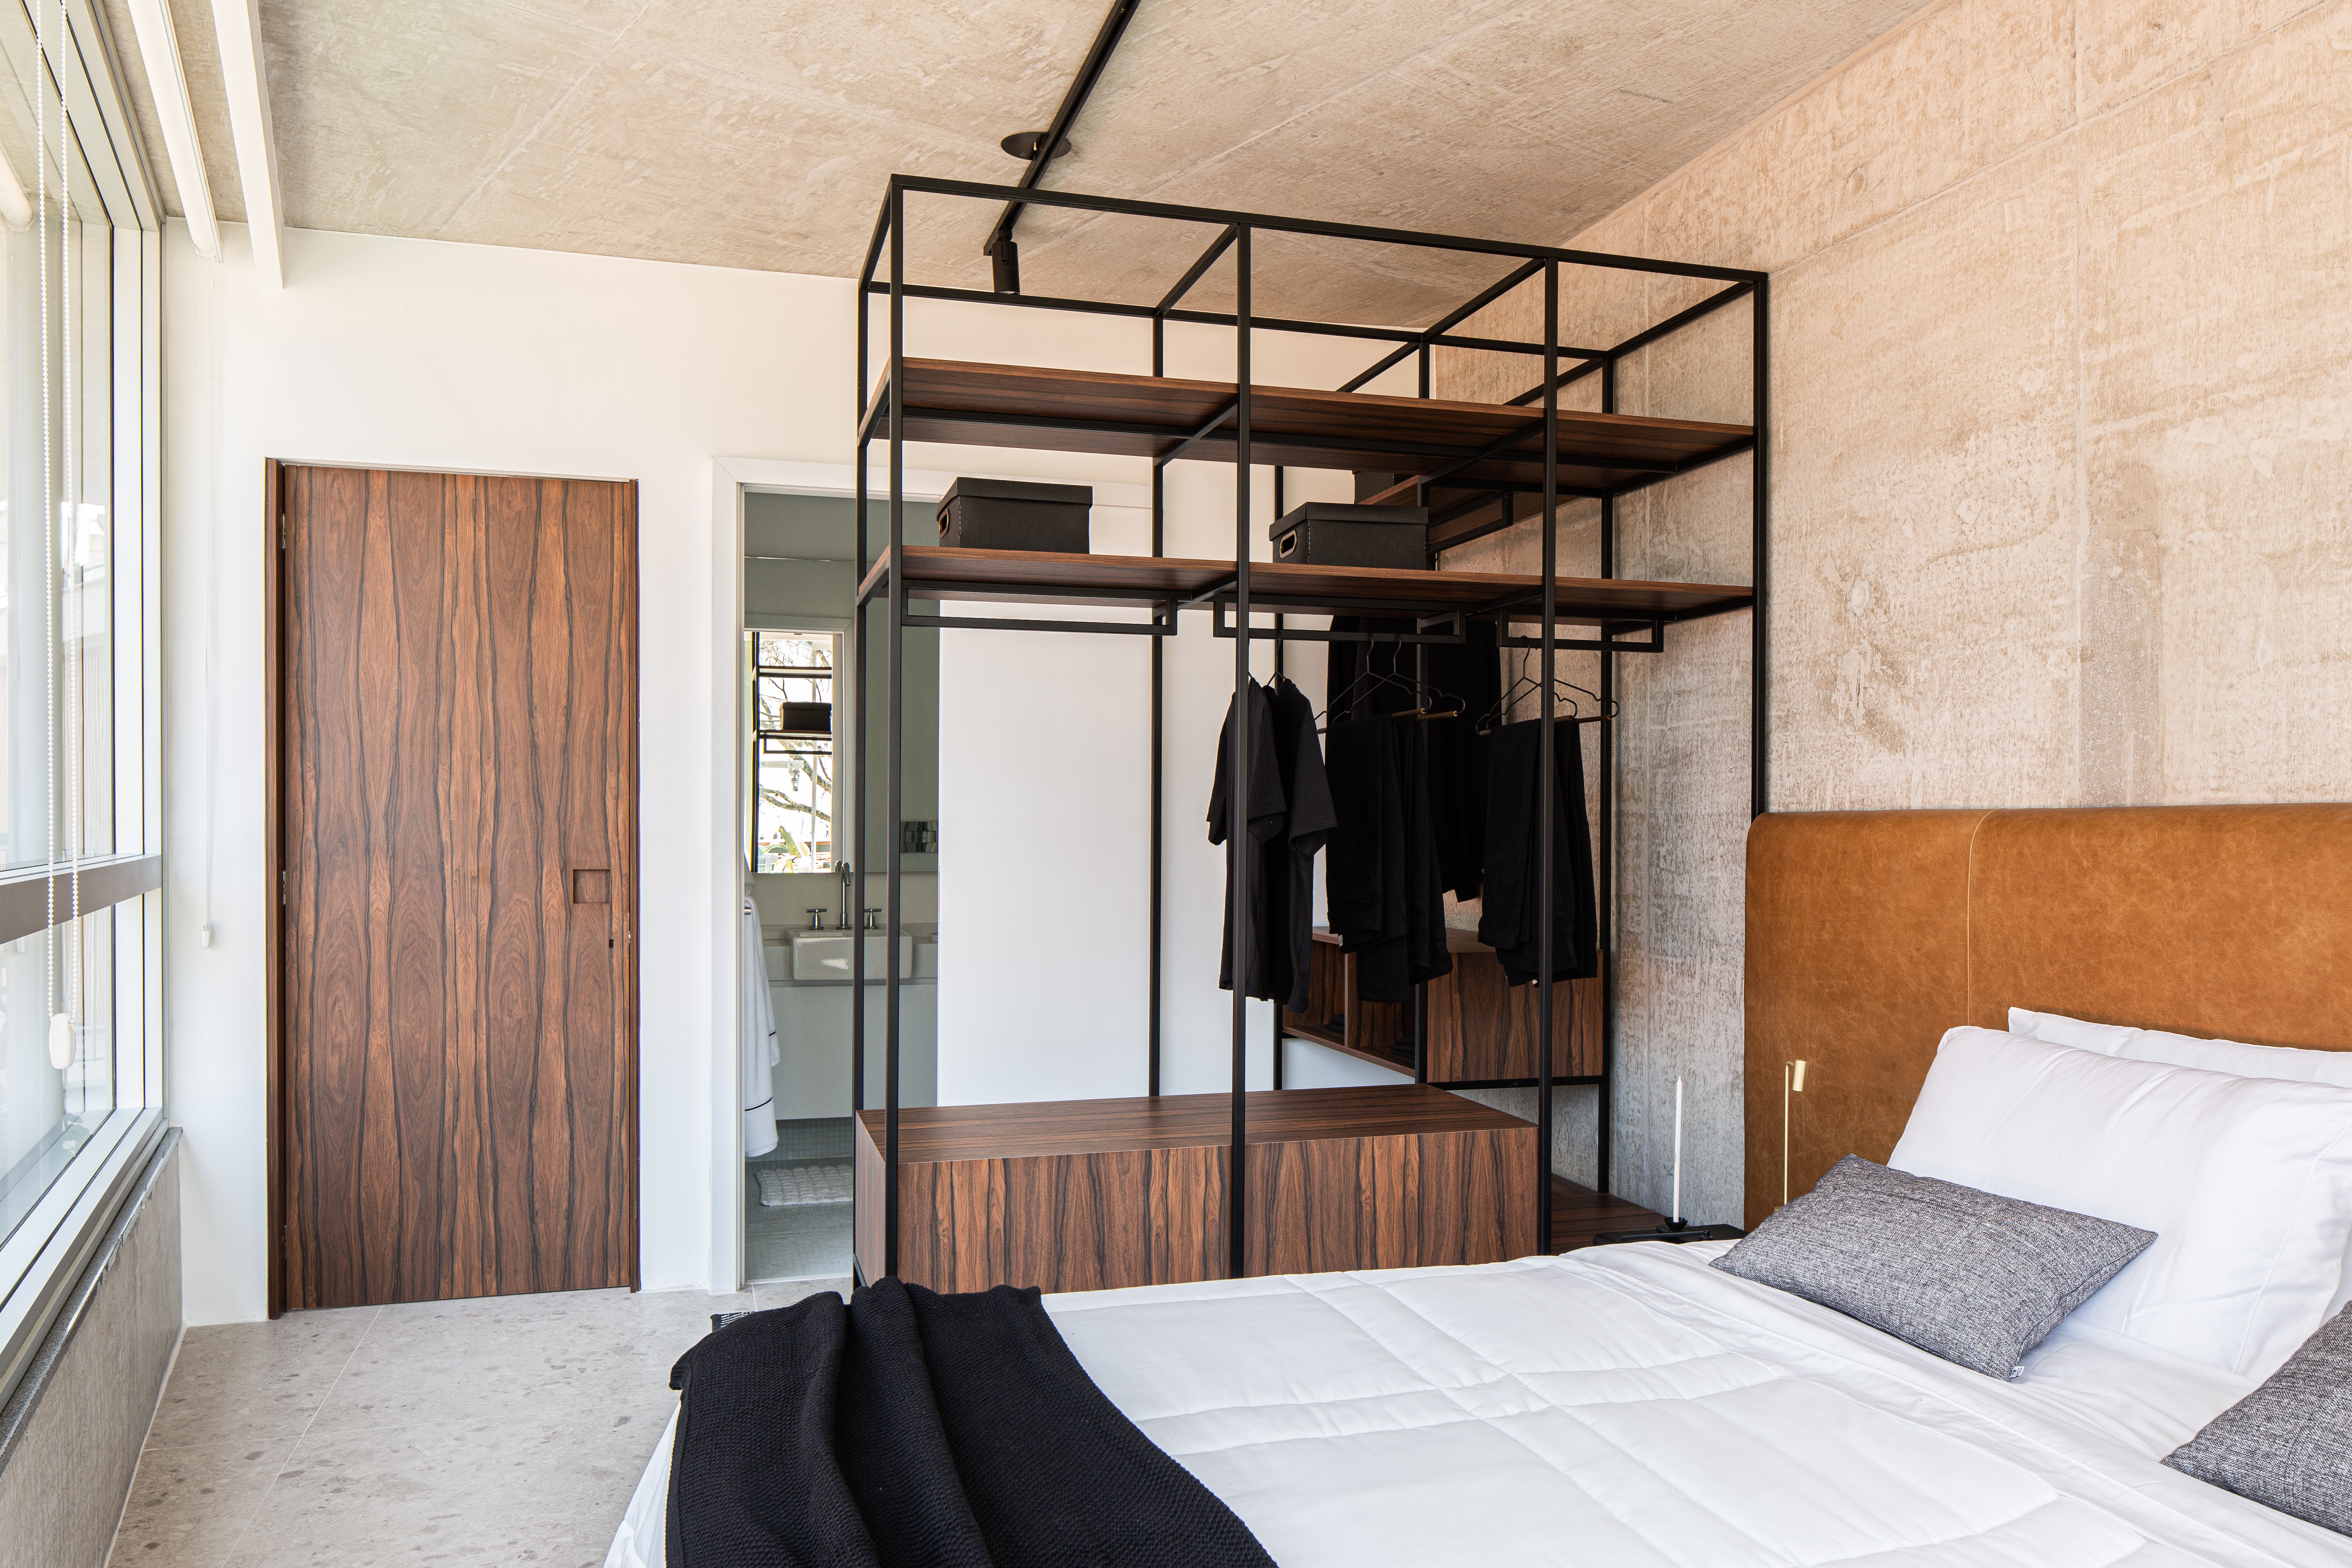 Painéis em madeira pau ferro contrastam com laje de concreto neste apê. Projeto de Estúdio Pluri. Na foto, quarto, cama de casal, cabeceira de couro marrom, closet aberto.